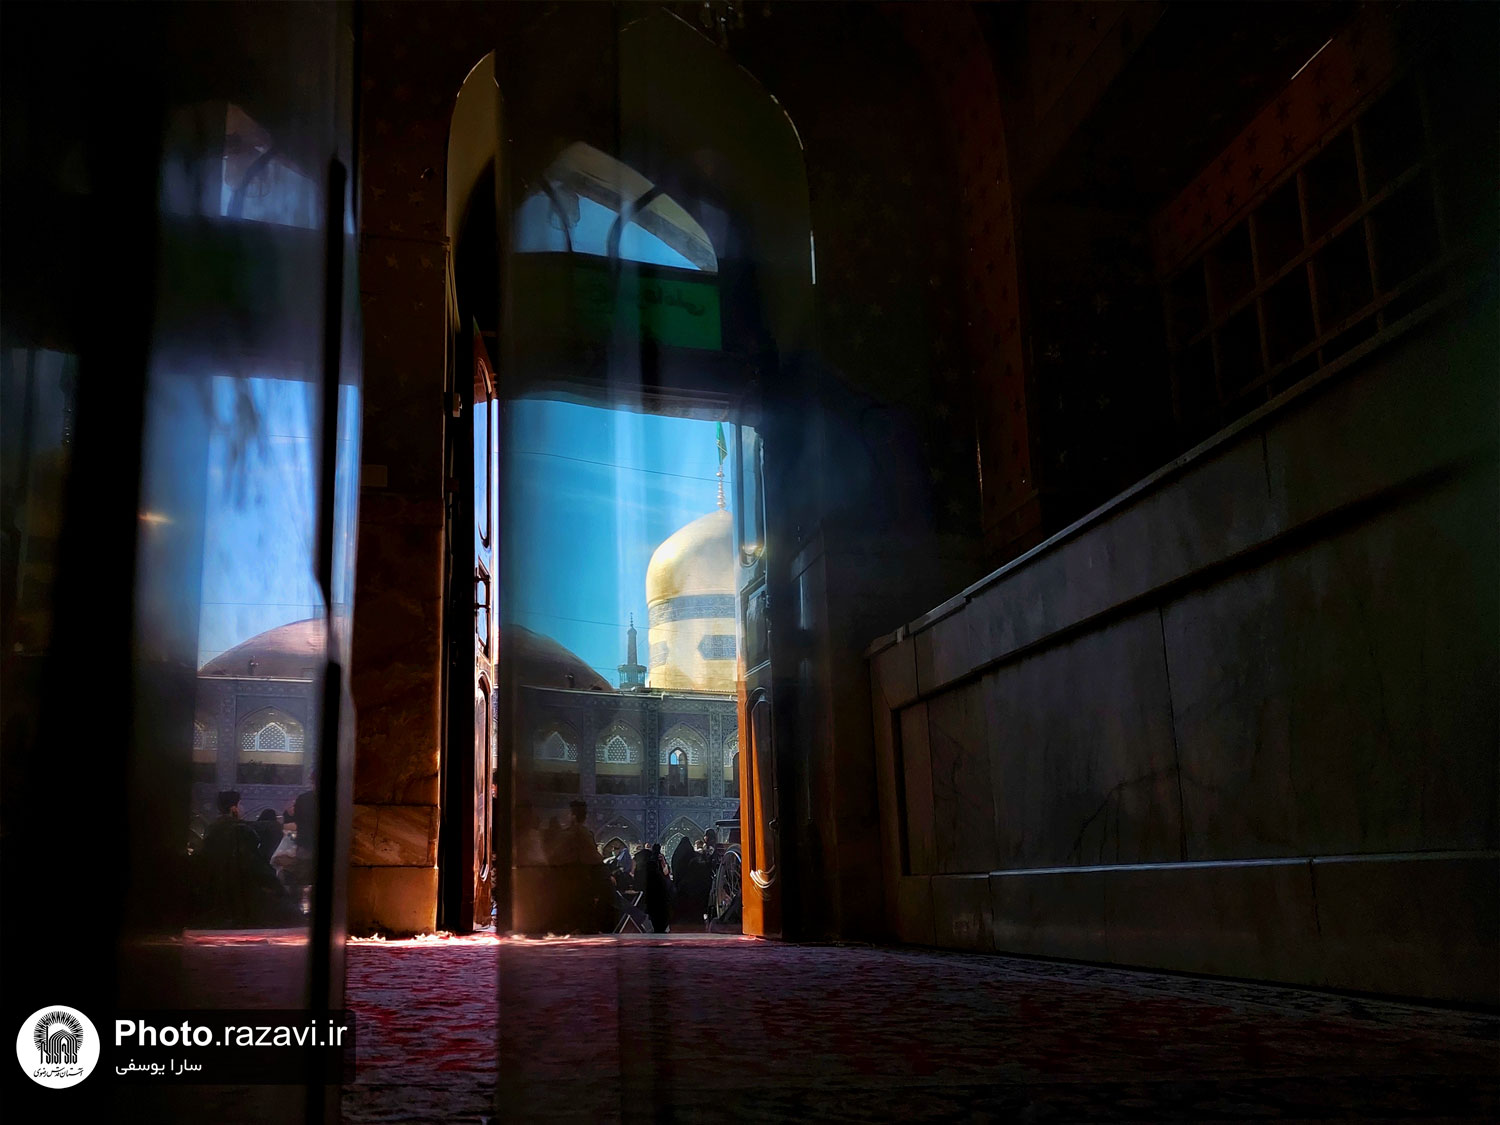 عکس با کیفیت : صحن انقلاب اسلامی حرم امام رضا علیه السلام